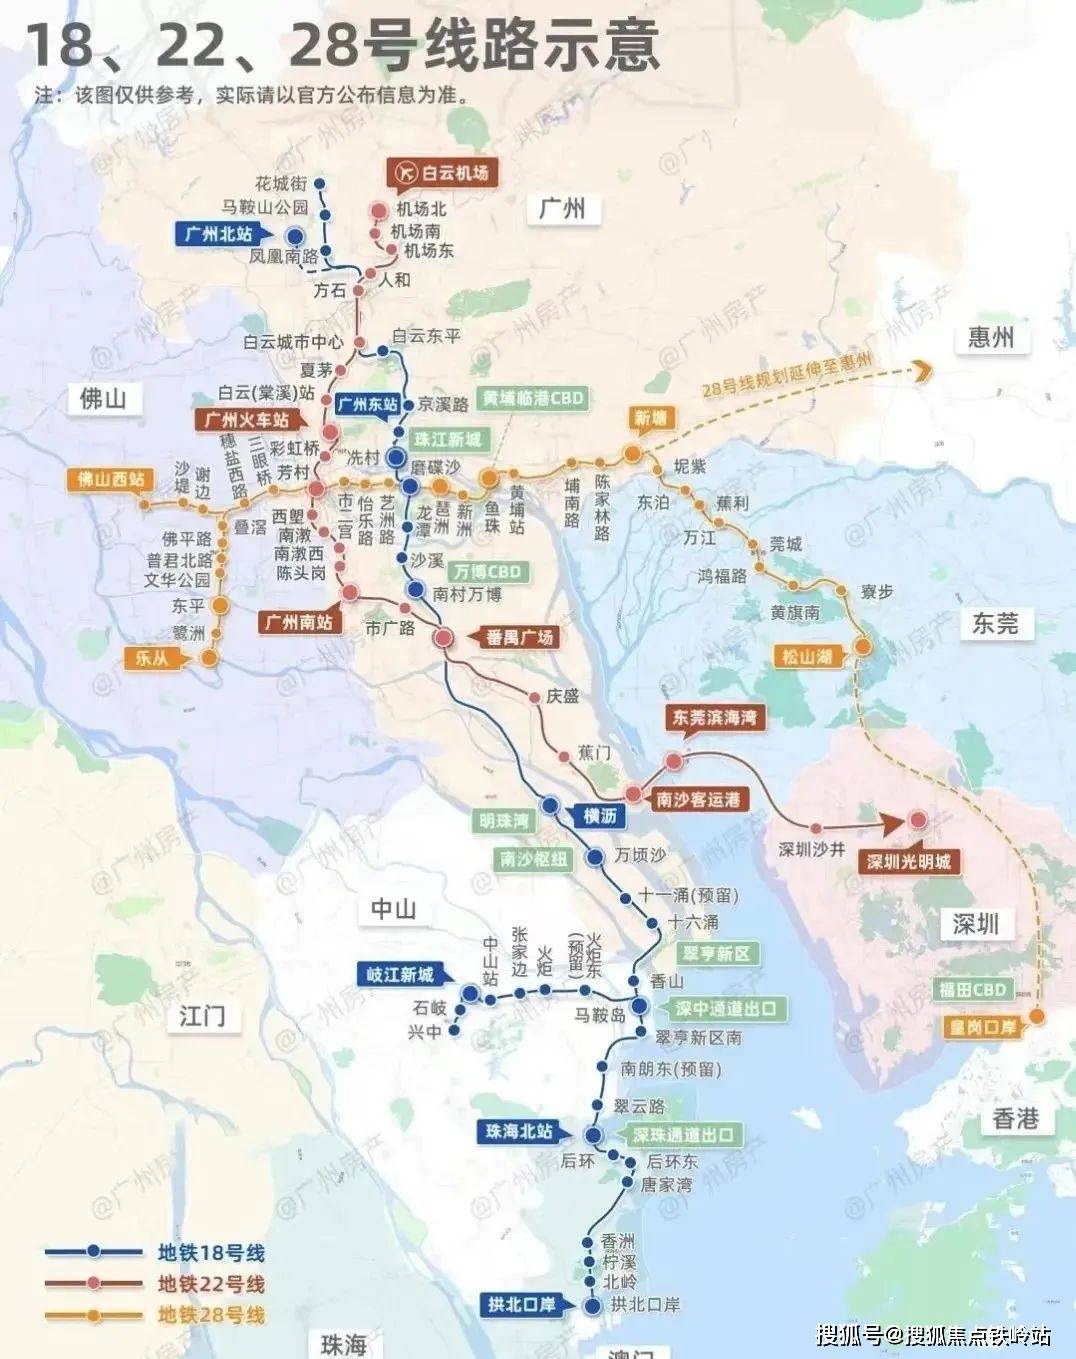 而且,28号线和18号线,22号线,还将组成大湾区以广州为中心的双十字